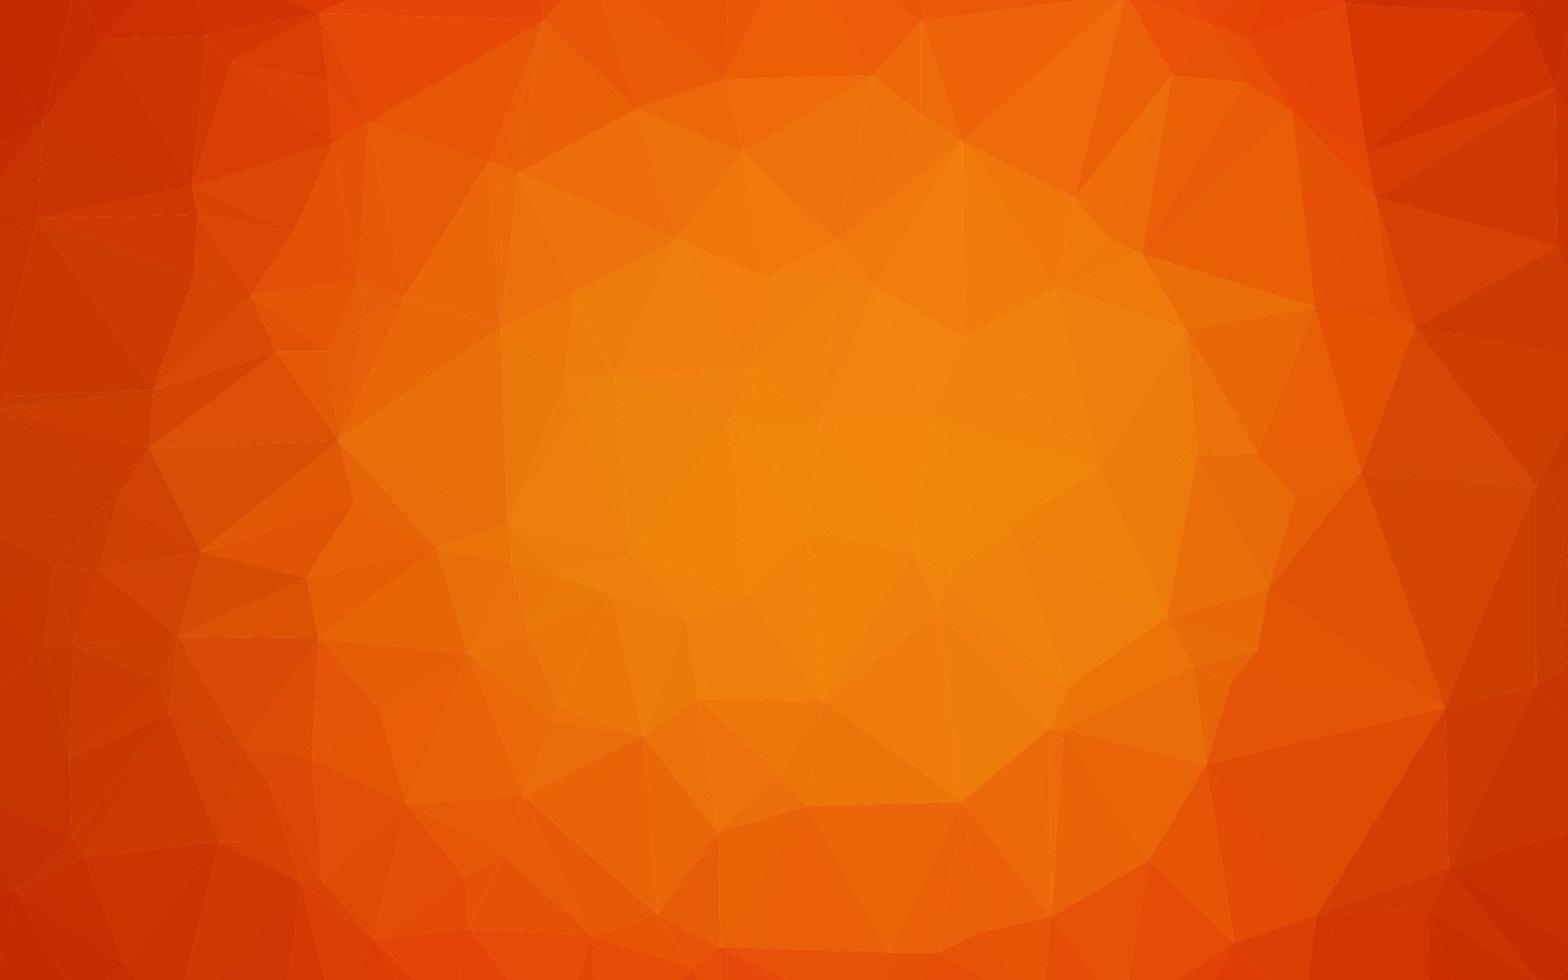 struttura poligonale astratta di vettore arancione chiaro.